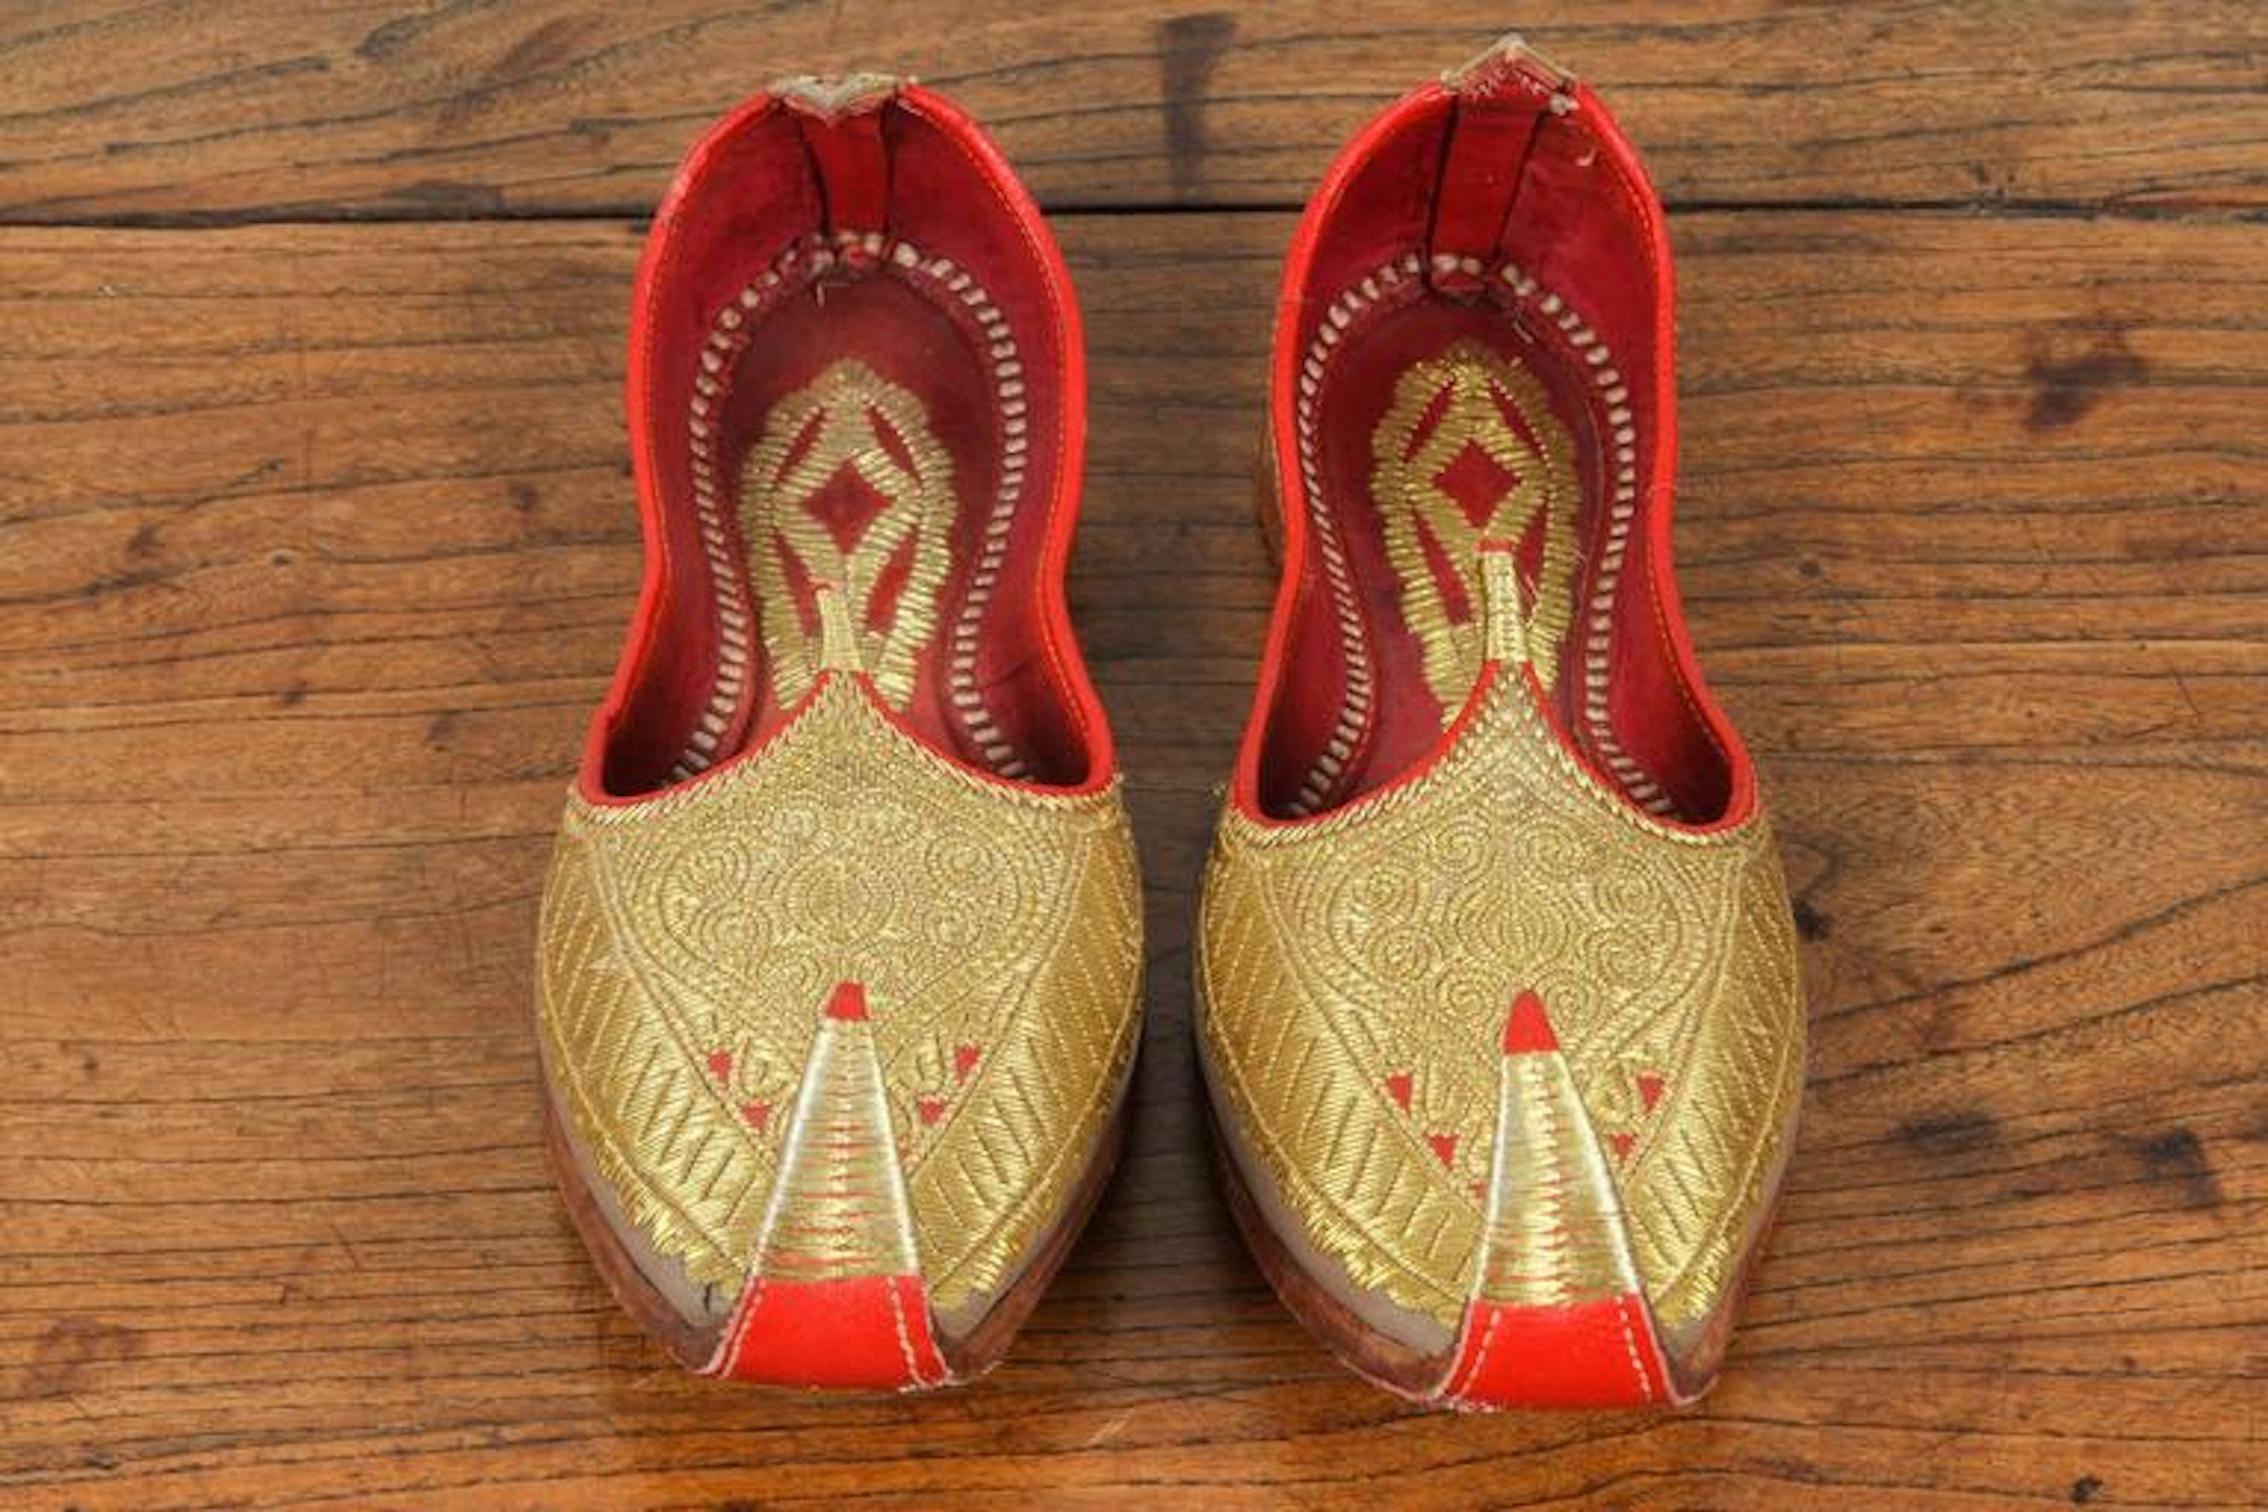 Superbes chaussures vintage mauresques du Moyen-Orient en cuir rouge et or brodé. 
Chaussons de cérémonie de mariage en cuir royal, brodés au fil d'or.
Aladin, Ali Baba Génie arabe Style ottoman Classique orteil recourbé étonnant à utiliser comme